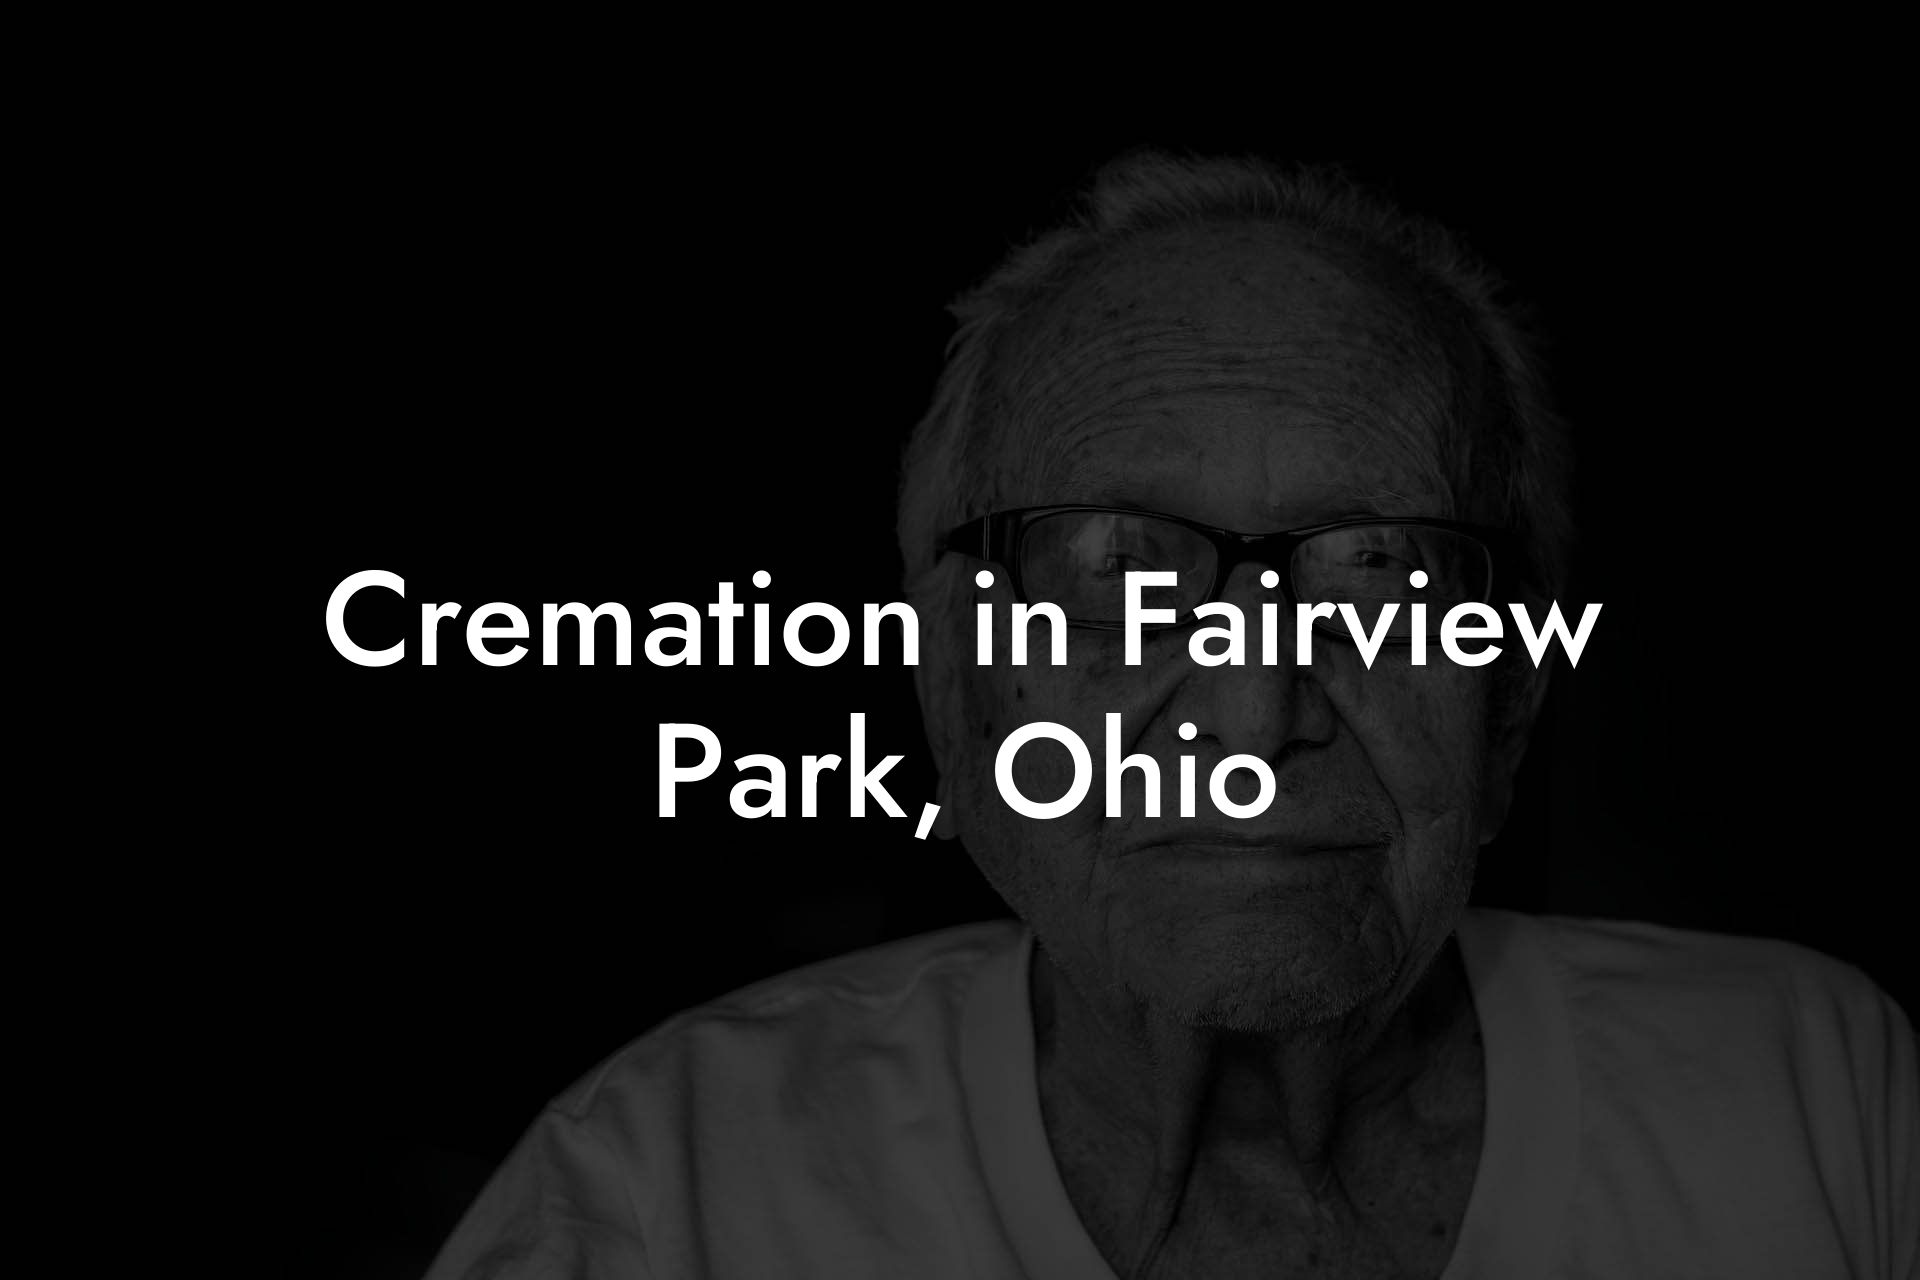 Cremation in Fairview Park, Ohio